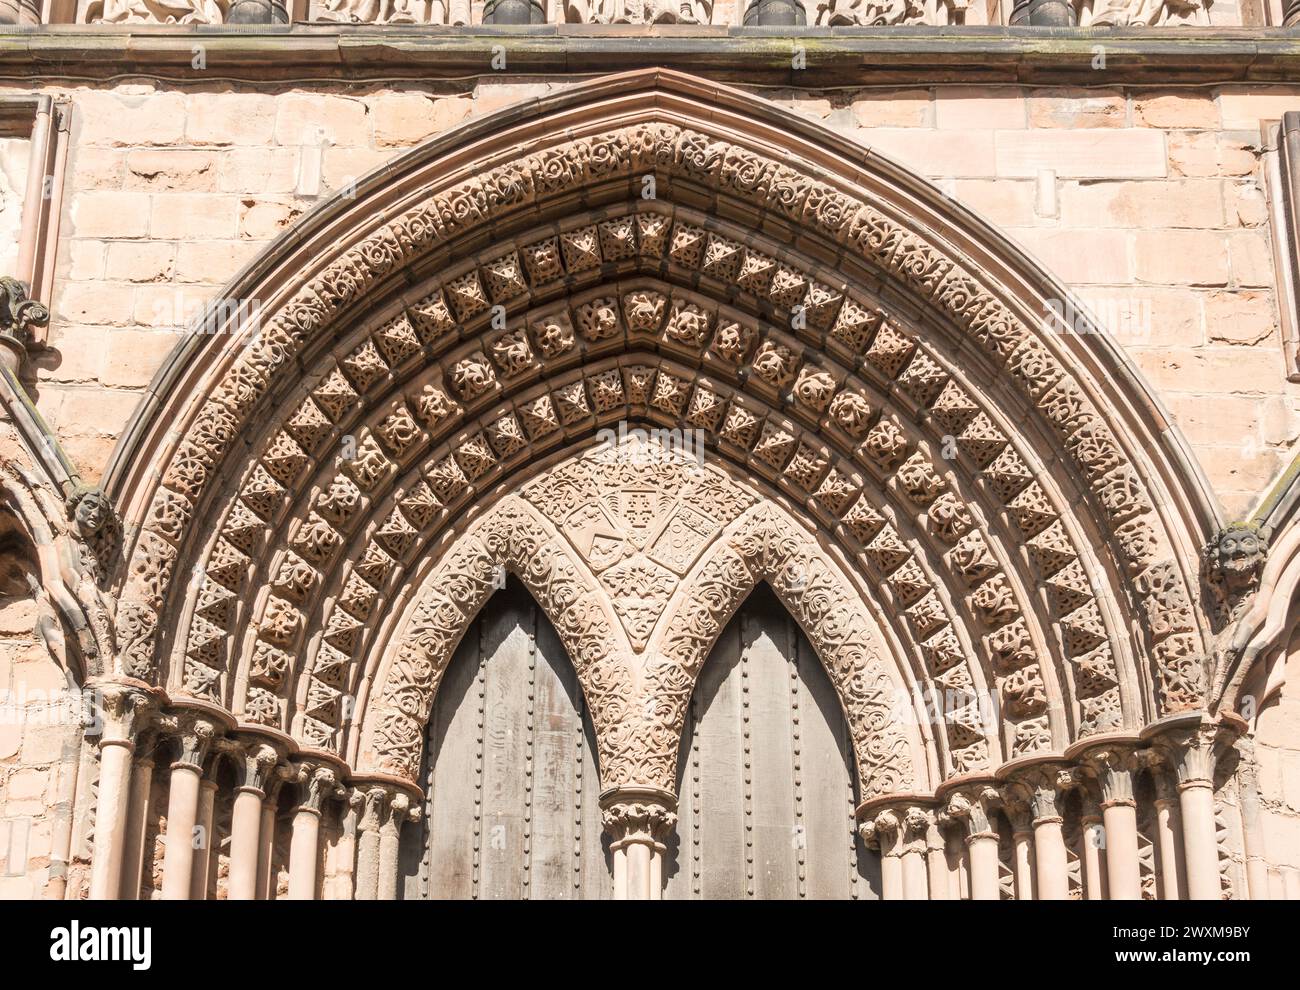 Arche décorée sur la porte sud de la cathédrale de Lichfield, dans le Staffordshire, Angleterre, Royaume-Uni Banque D'Images